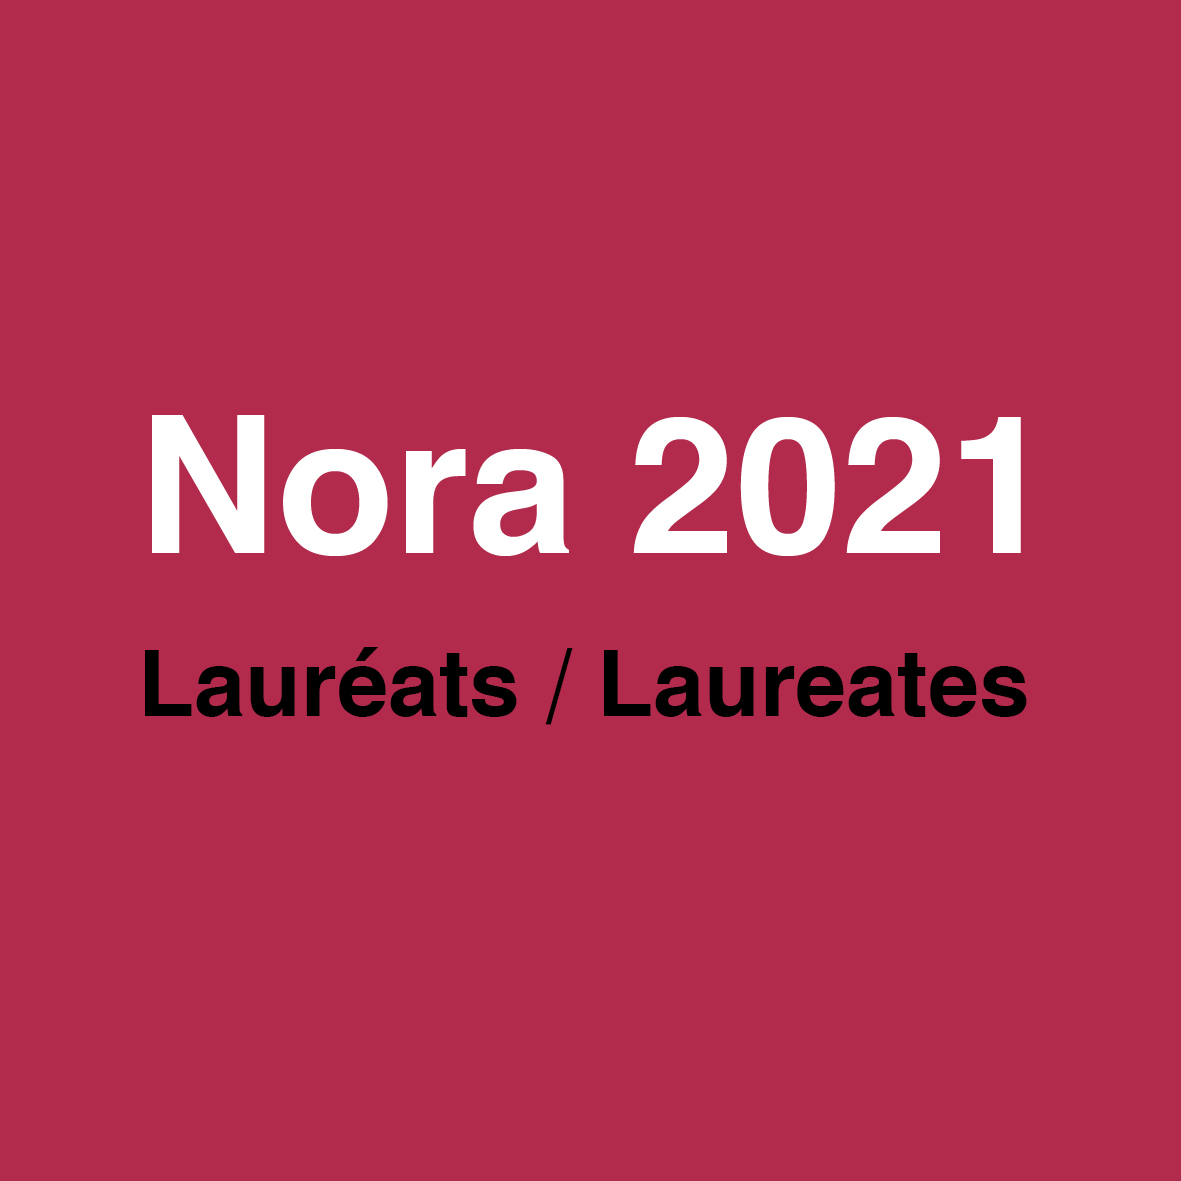 2021 Nora laureates